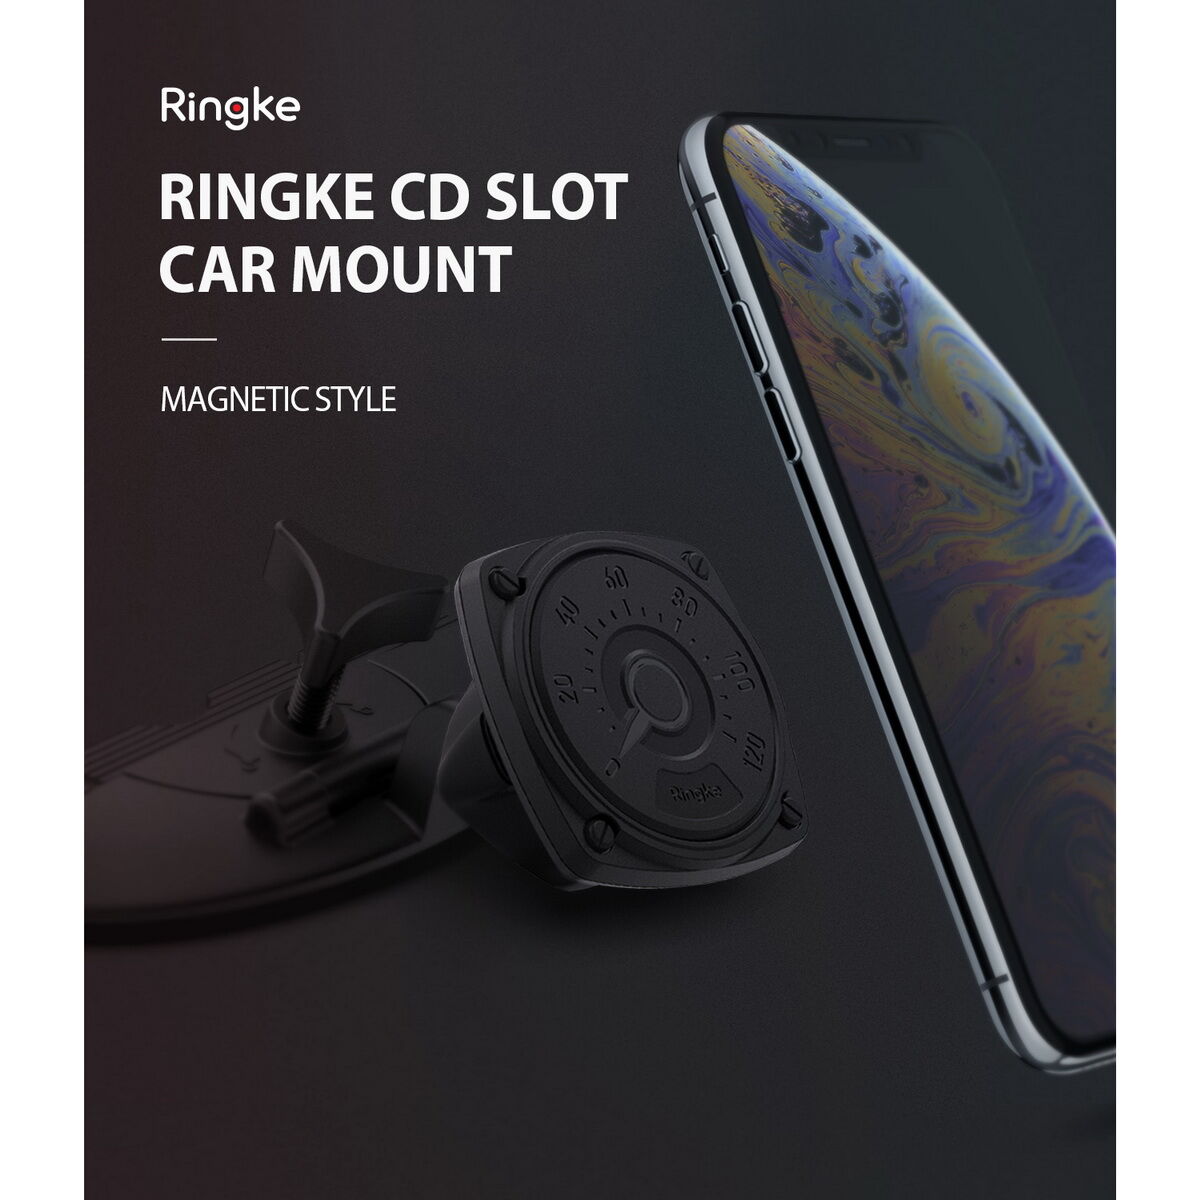 Kép 6/9 - Ringke autós telefontartó, Square CD Slot, CD lejátszóba helyezhető, Fekete